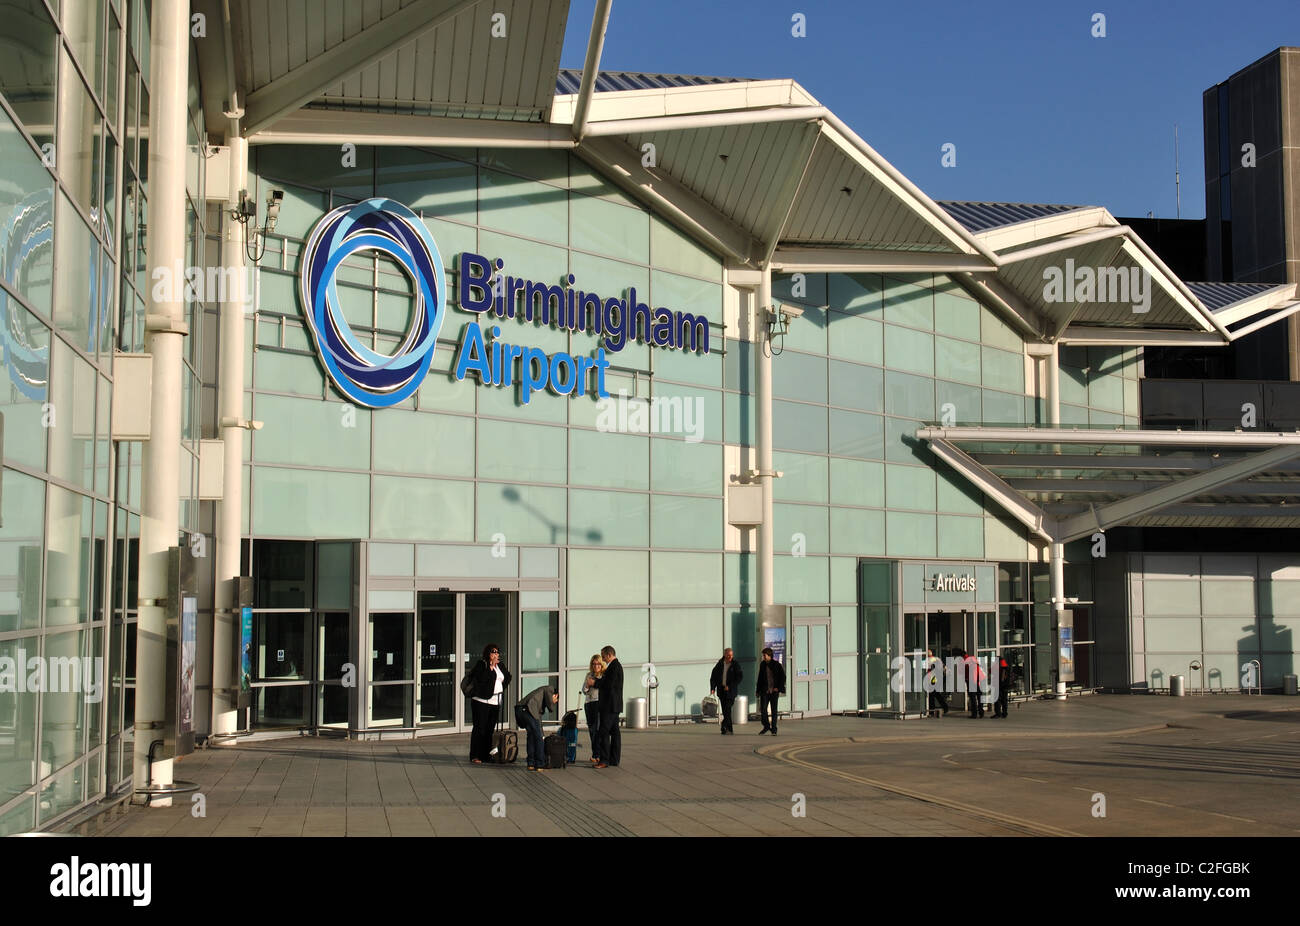 Birmingham Airport terminal building, England, UK Stock Photo